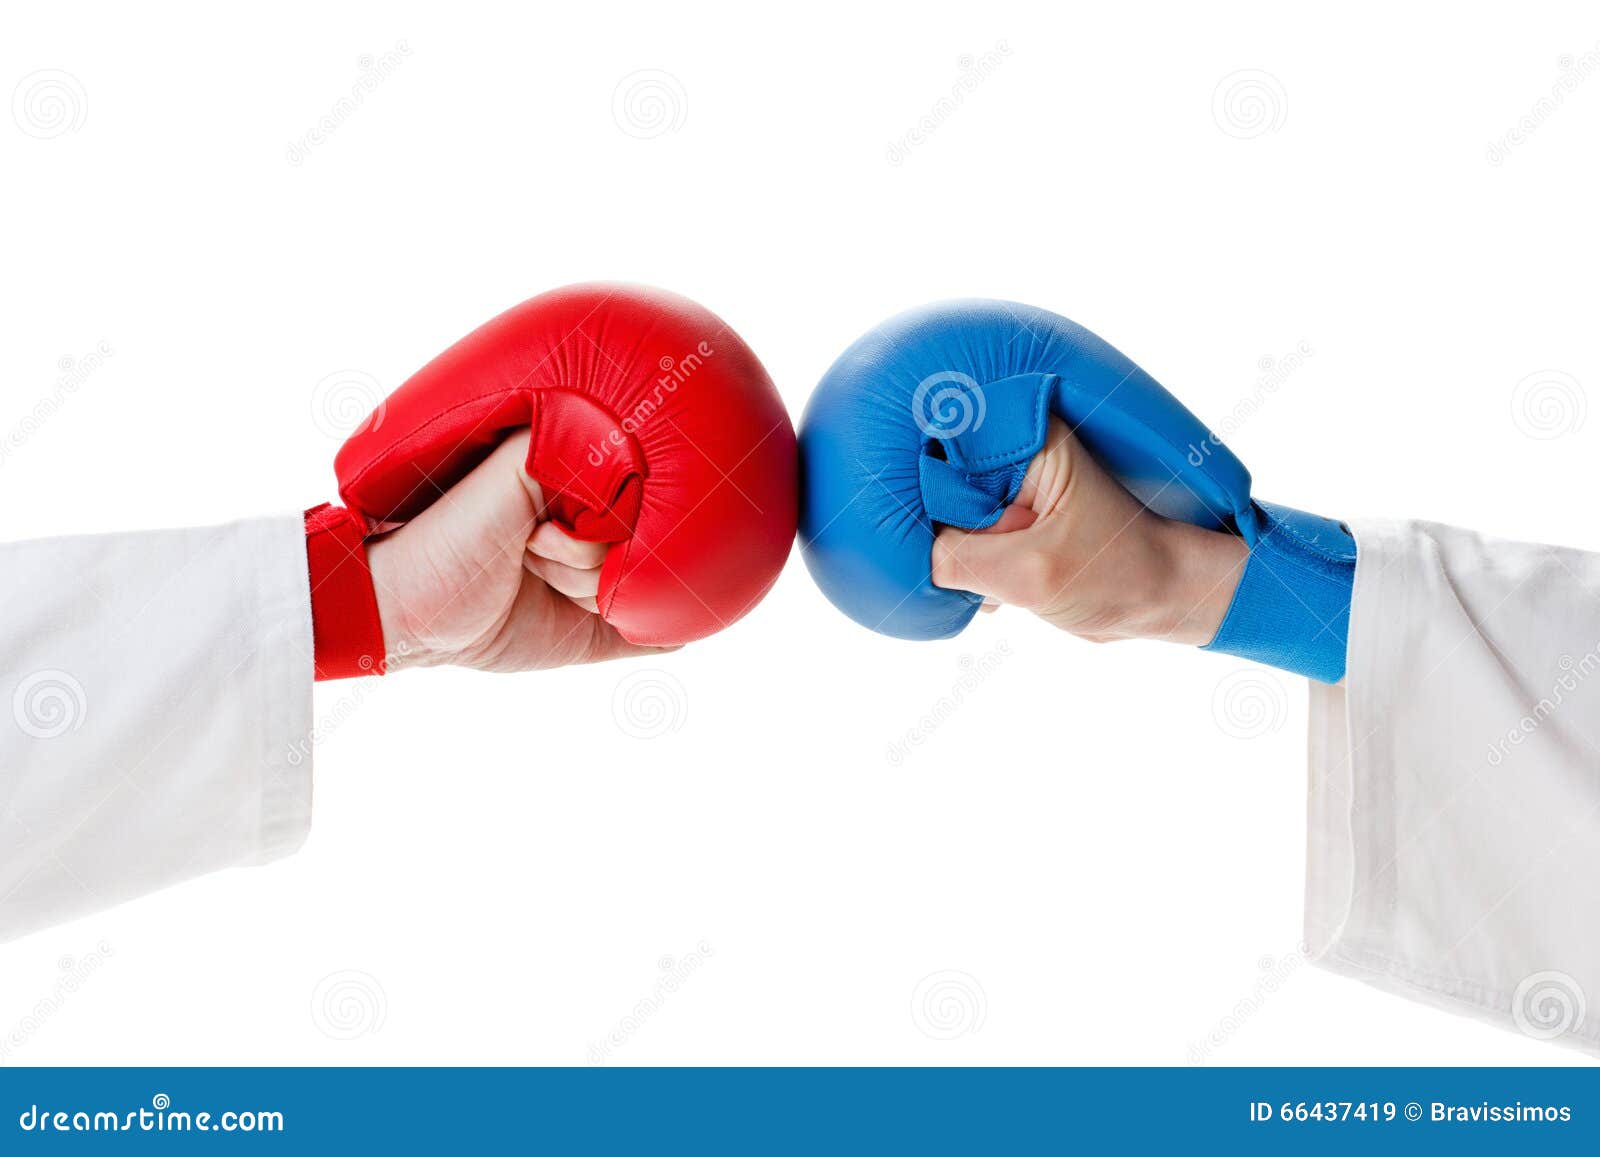 Karate γάντια σε ετοιμότητα Στοκ Εικόνα - εικόνα από kickboxing: 66437419